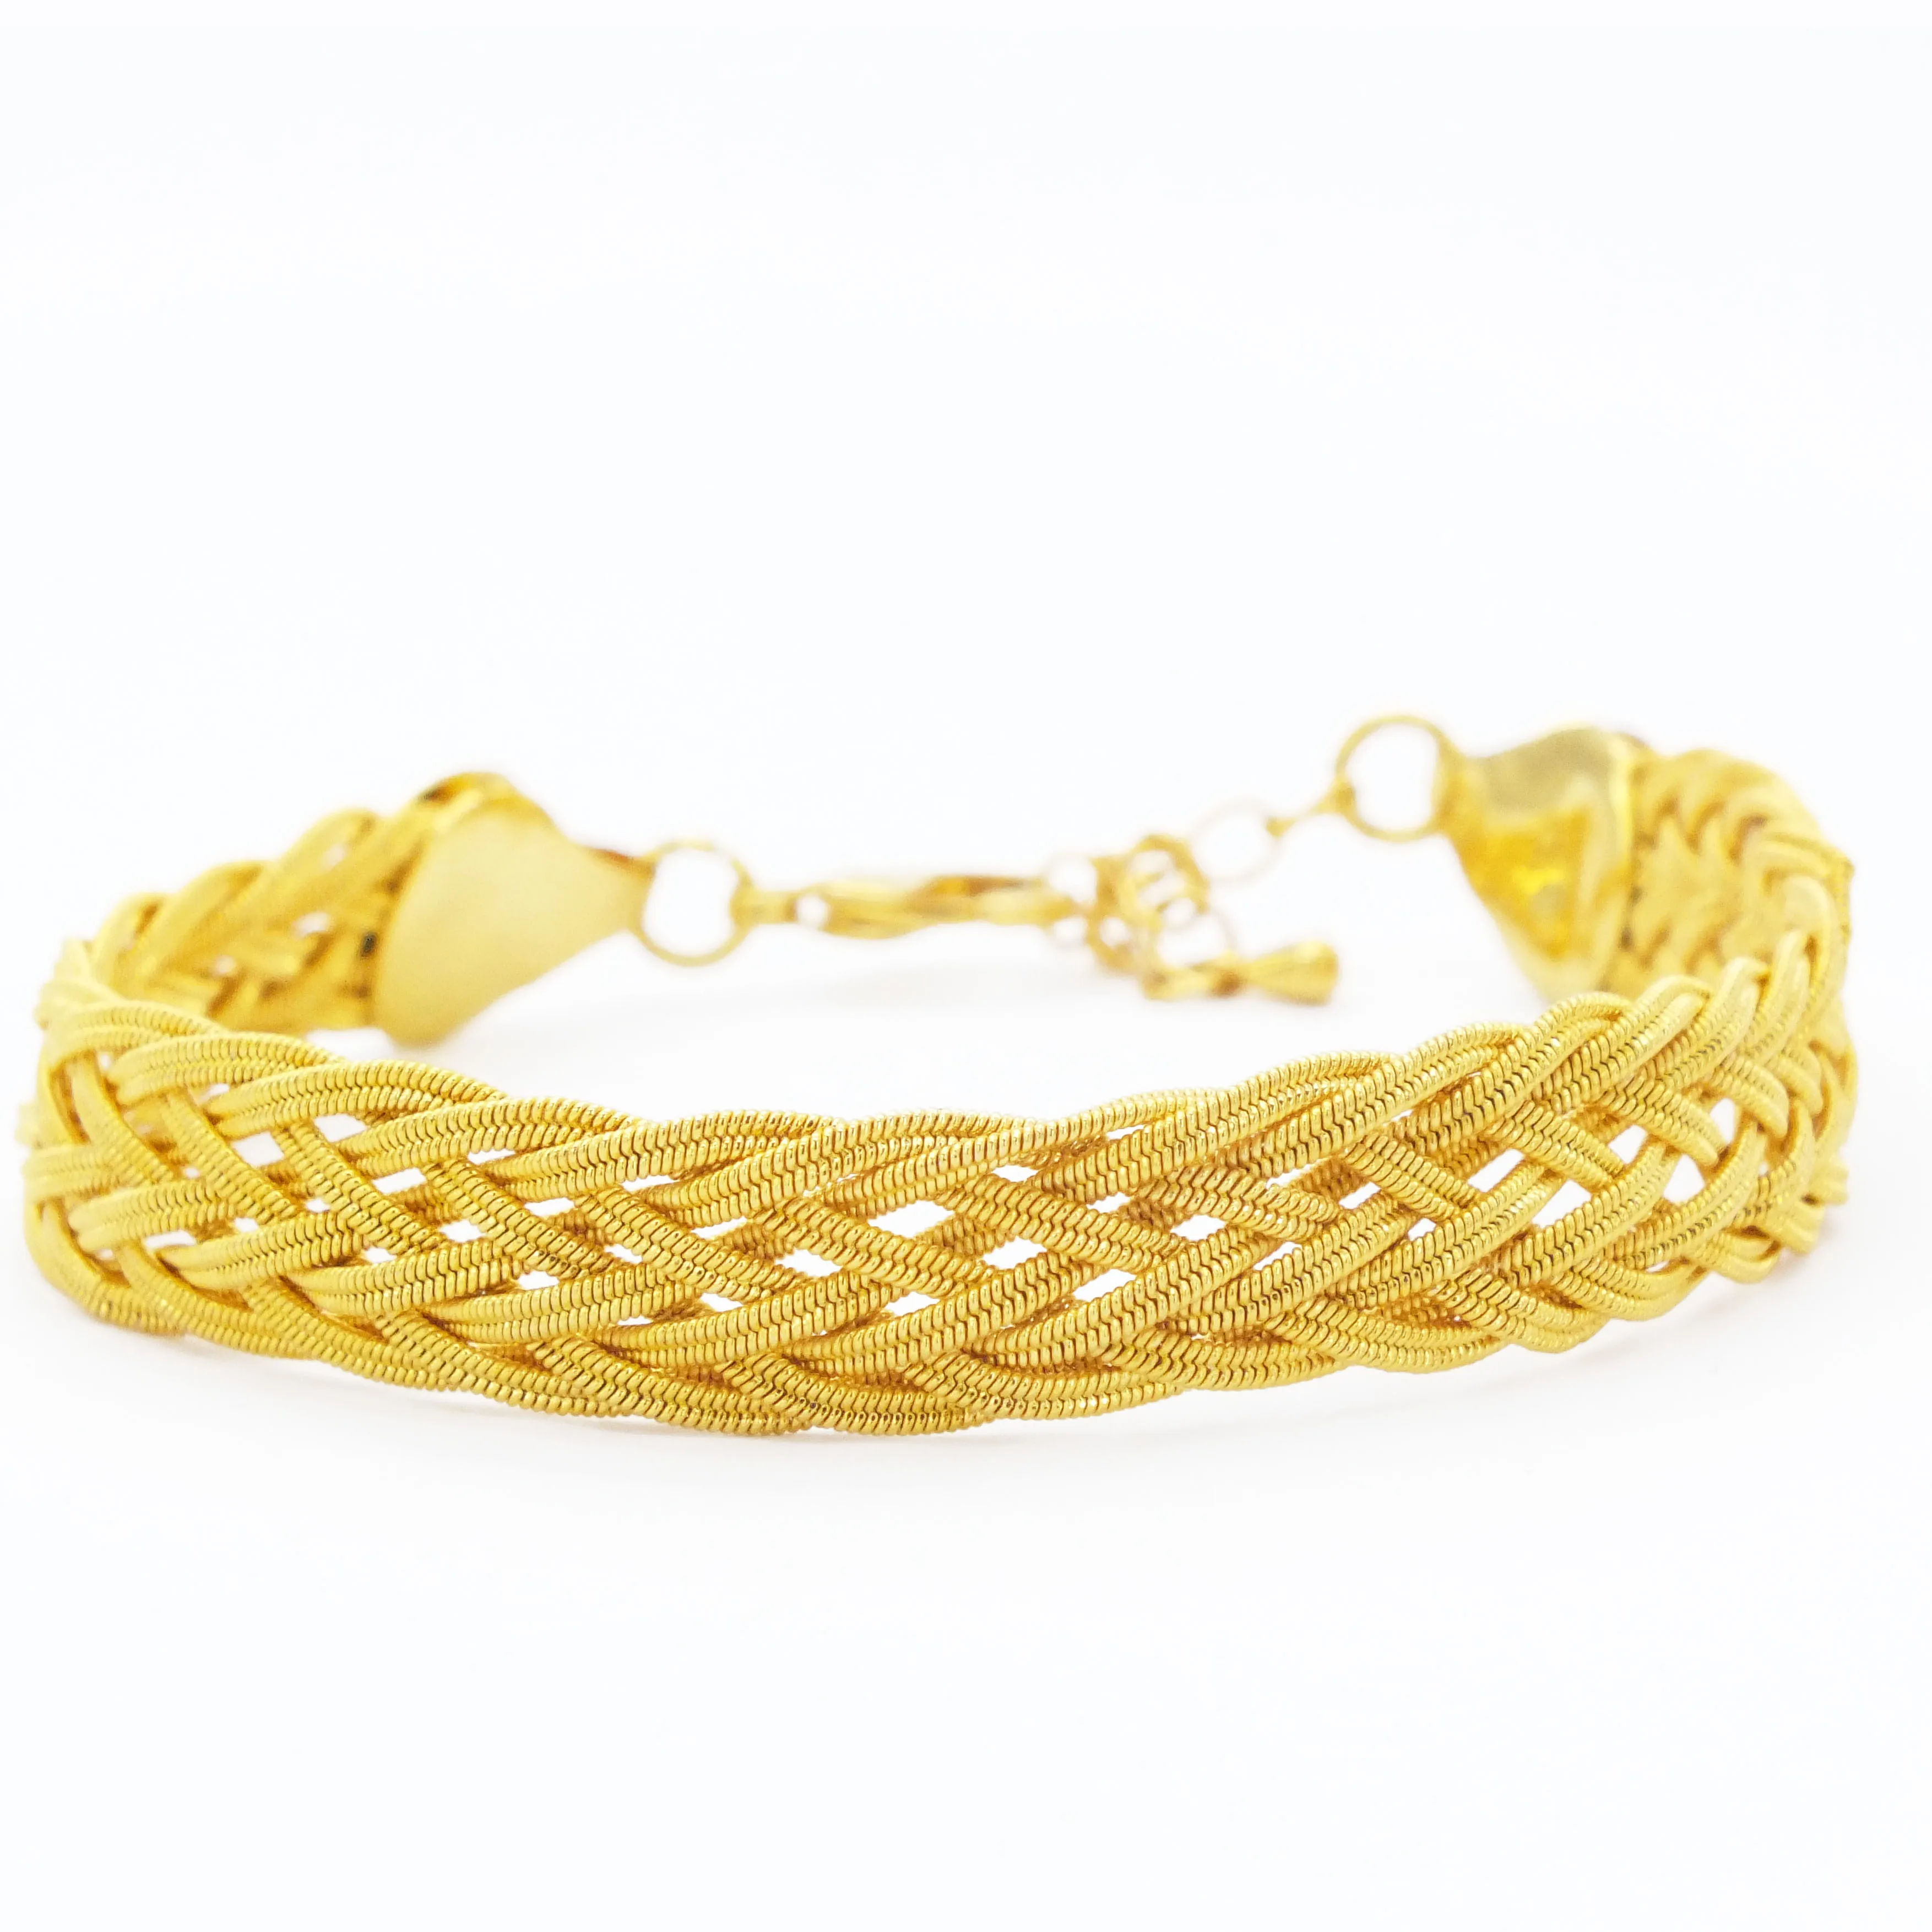 

FerizZ Gold Plated Stainless Steel Fashion Bracelet - Çelik Üzerine Altın Kaplama Moda Bileklik Ayarlanabilir 20-24cm